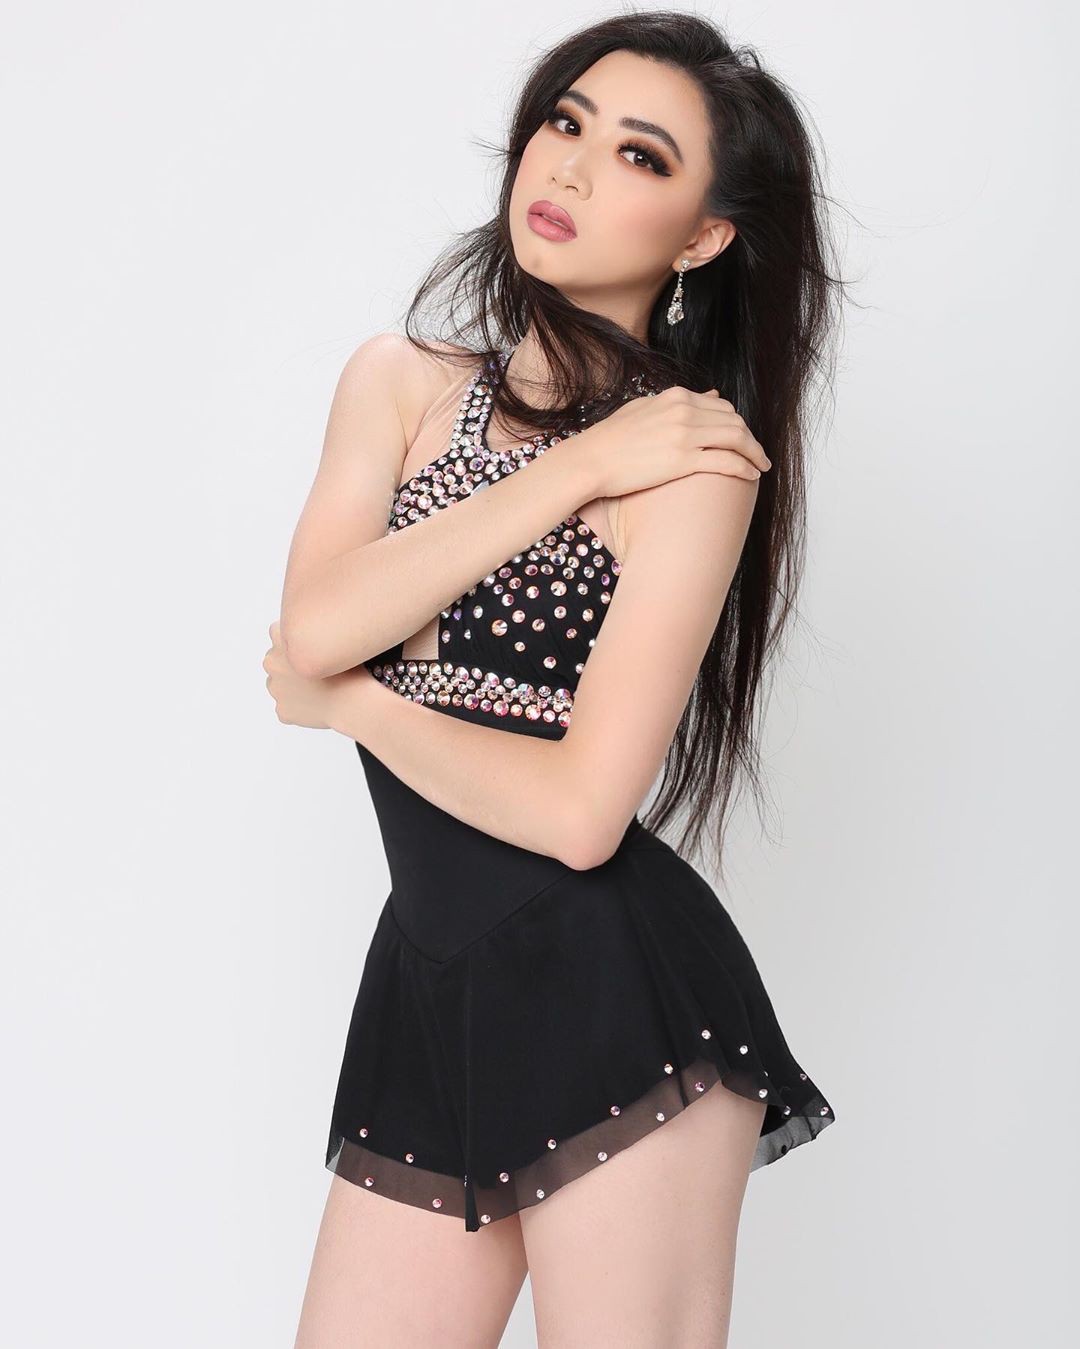 Elizabeth Nguyen photoshoot ideas, hot thighs, Sexy Models